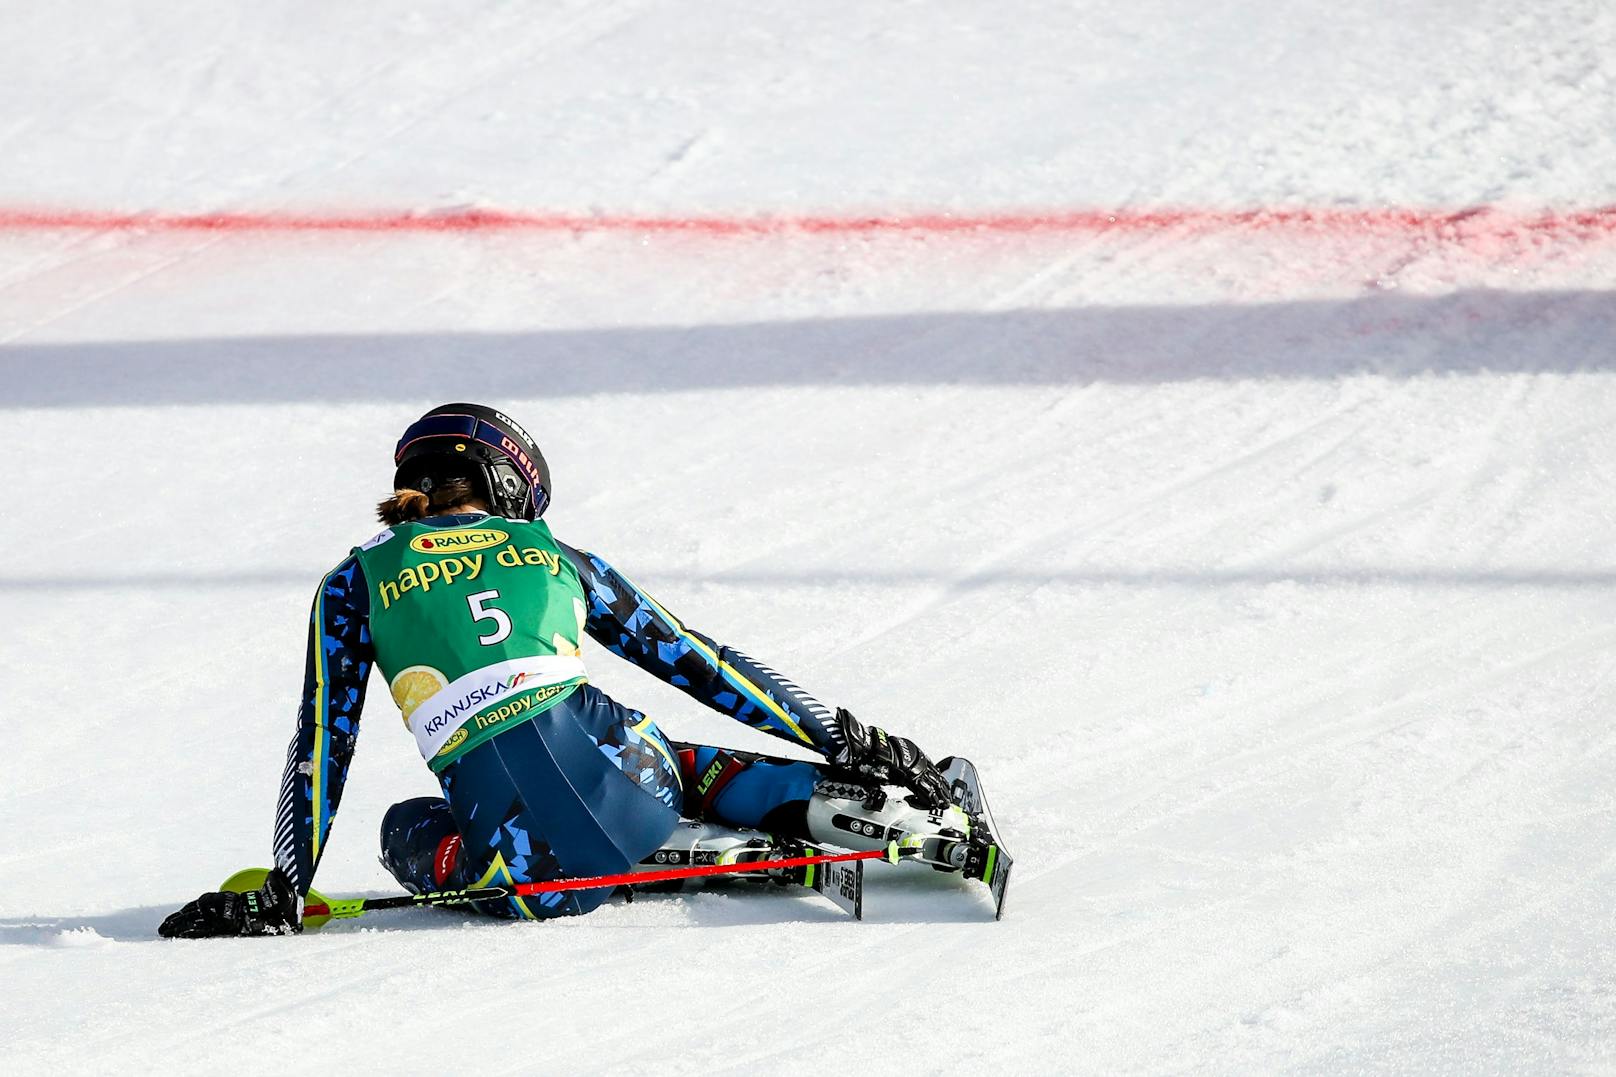 Die schwedische Topfahrerin Anna Swenn Larsson hat sich im Training schwer verletzt: Knöchelbruch.